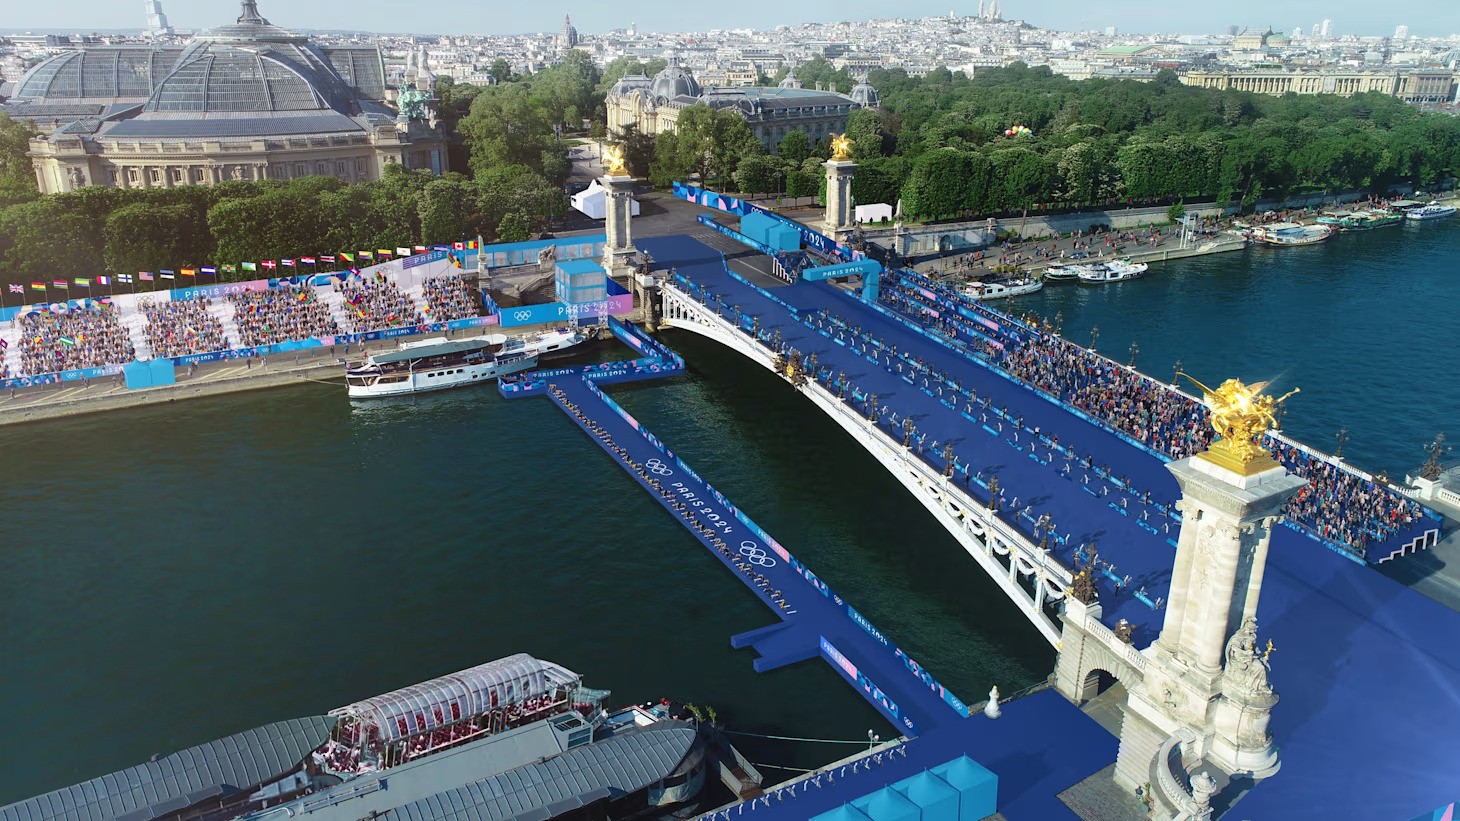 Ves Pariz je velik oder in to so najbolj zanimive lokacije, kjer bodo potekale letošnje olimpijske igre